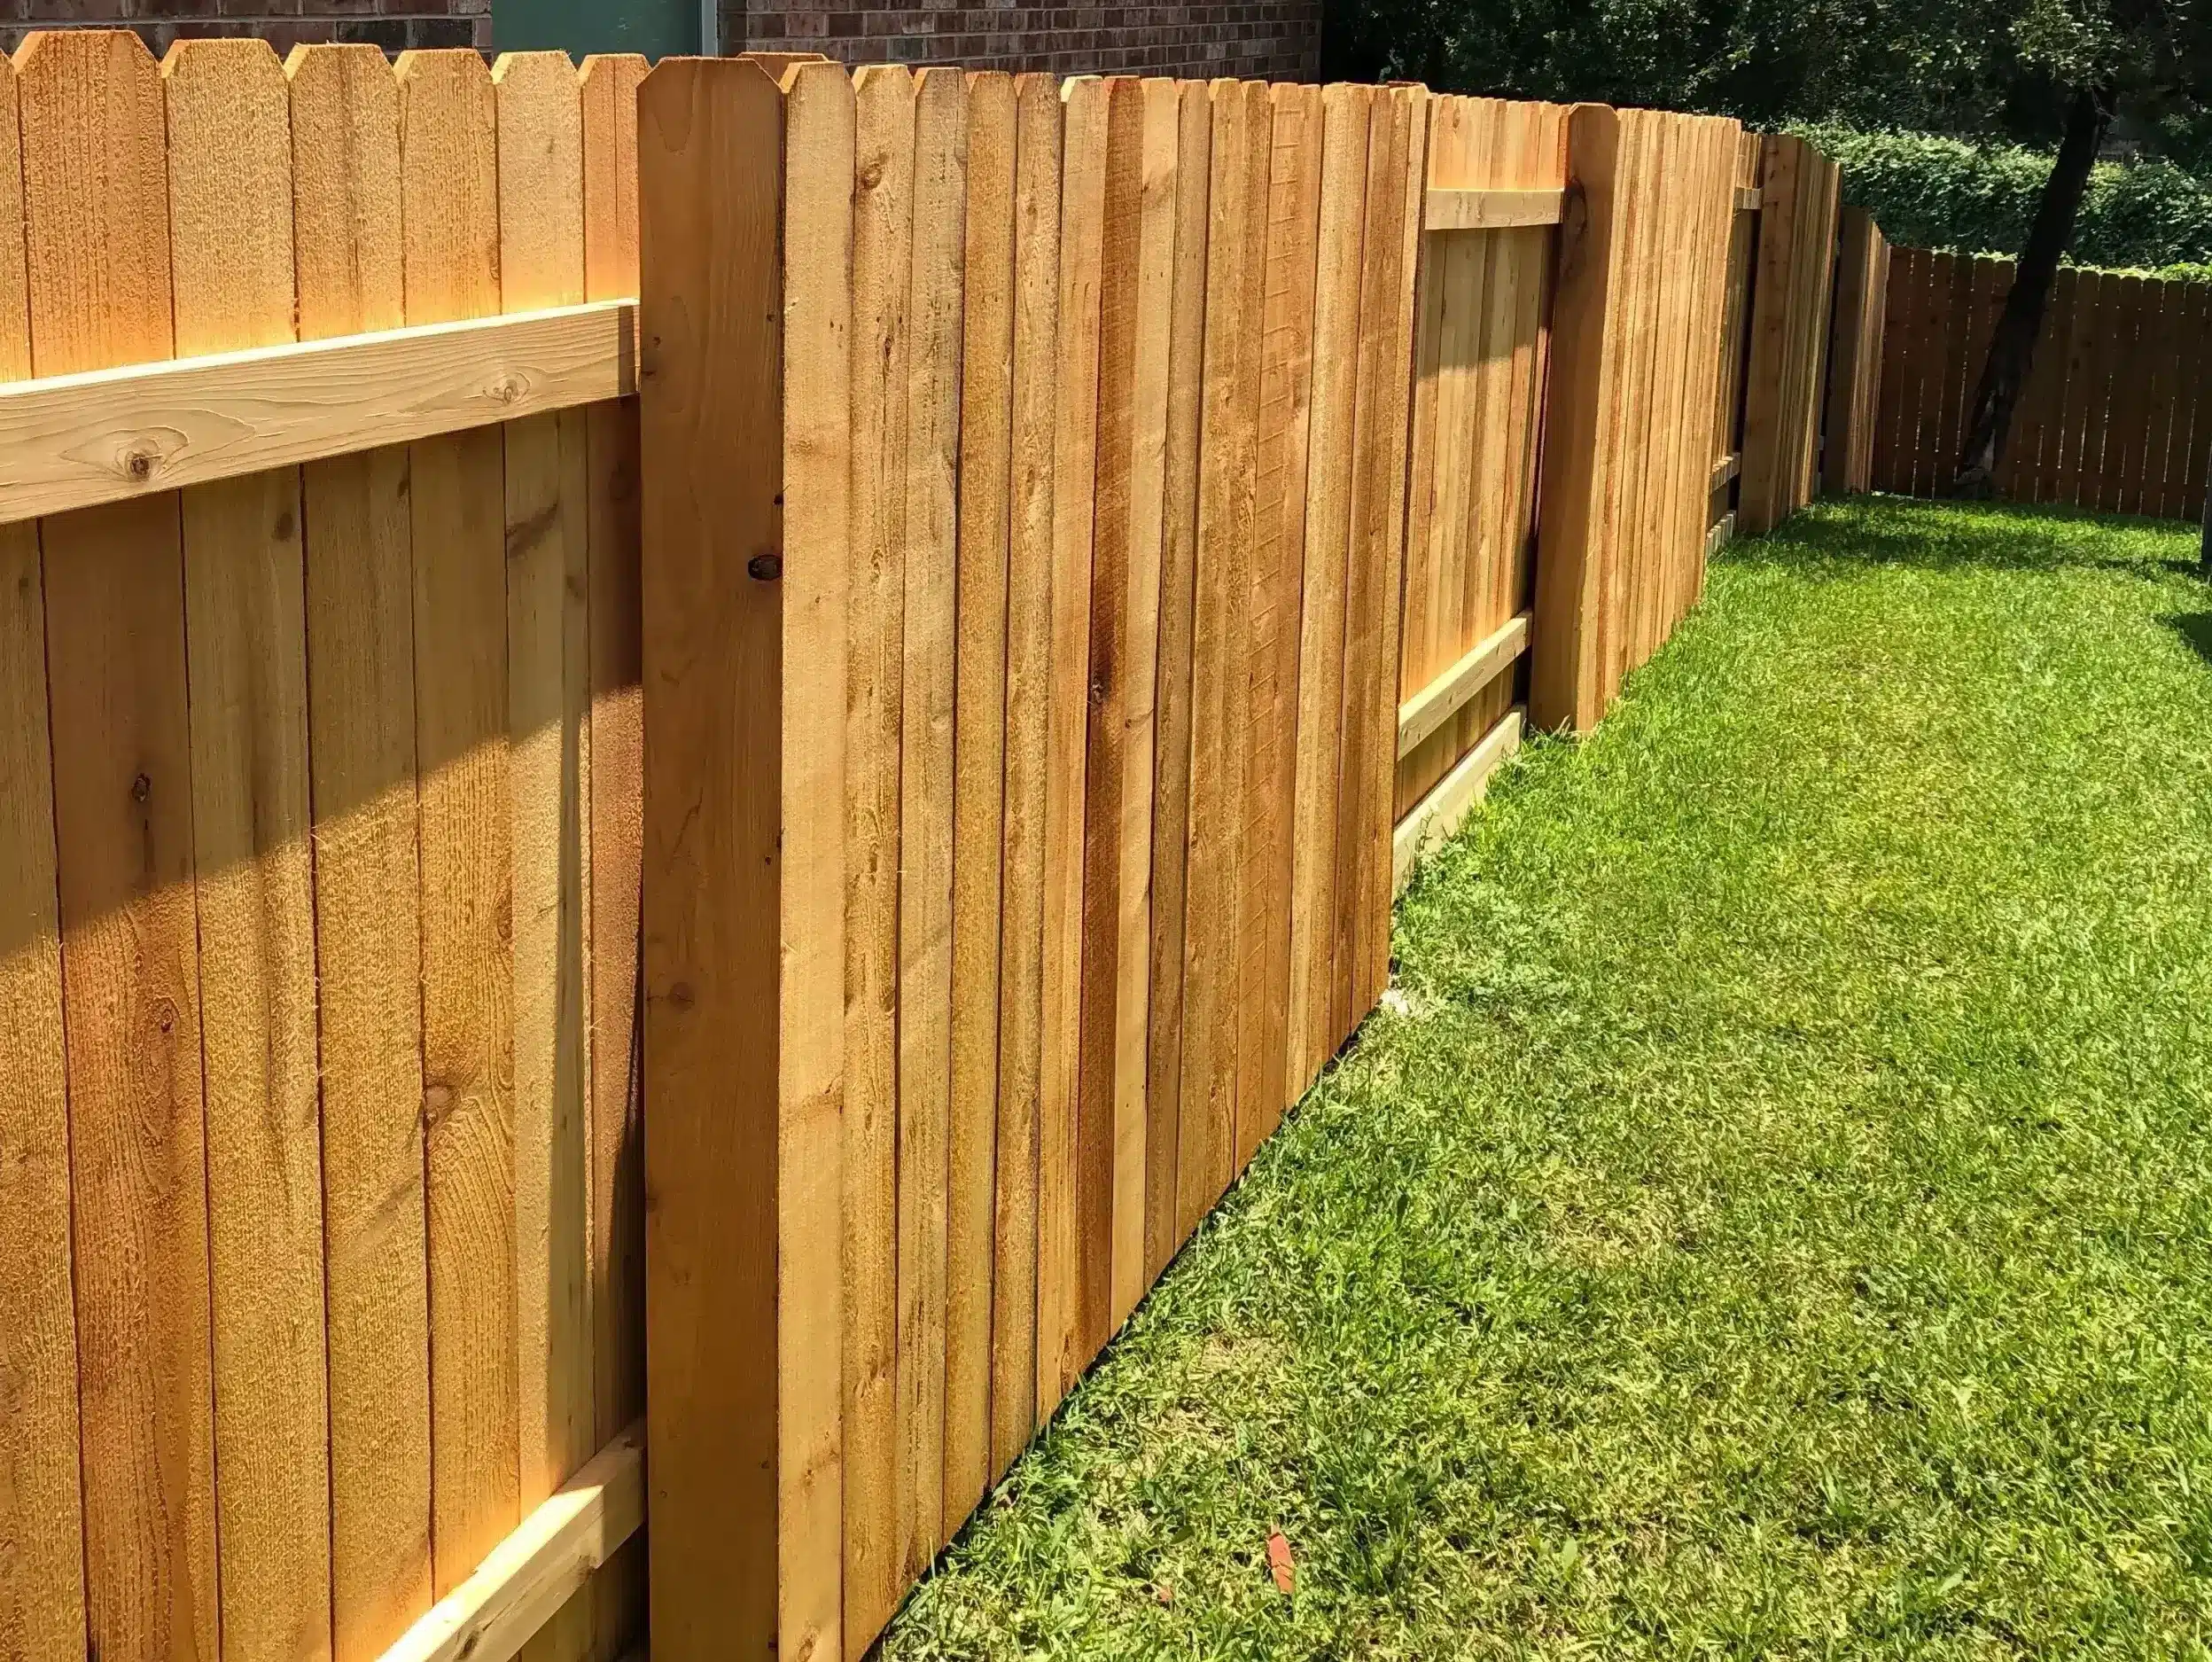 Cedar wood good neighbor fence in an Austin backyard